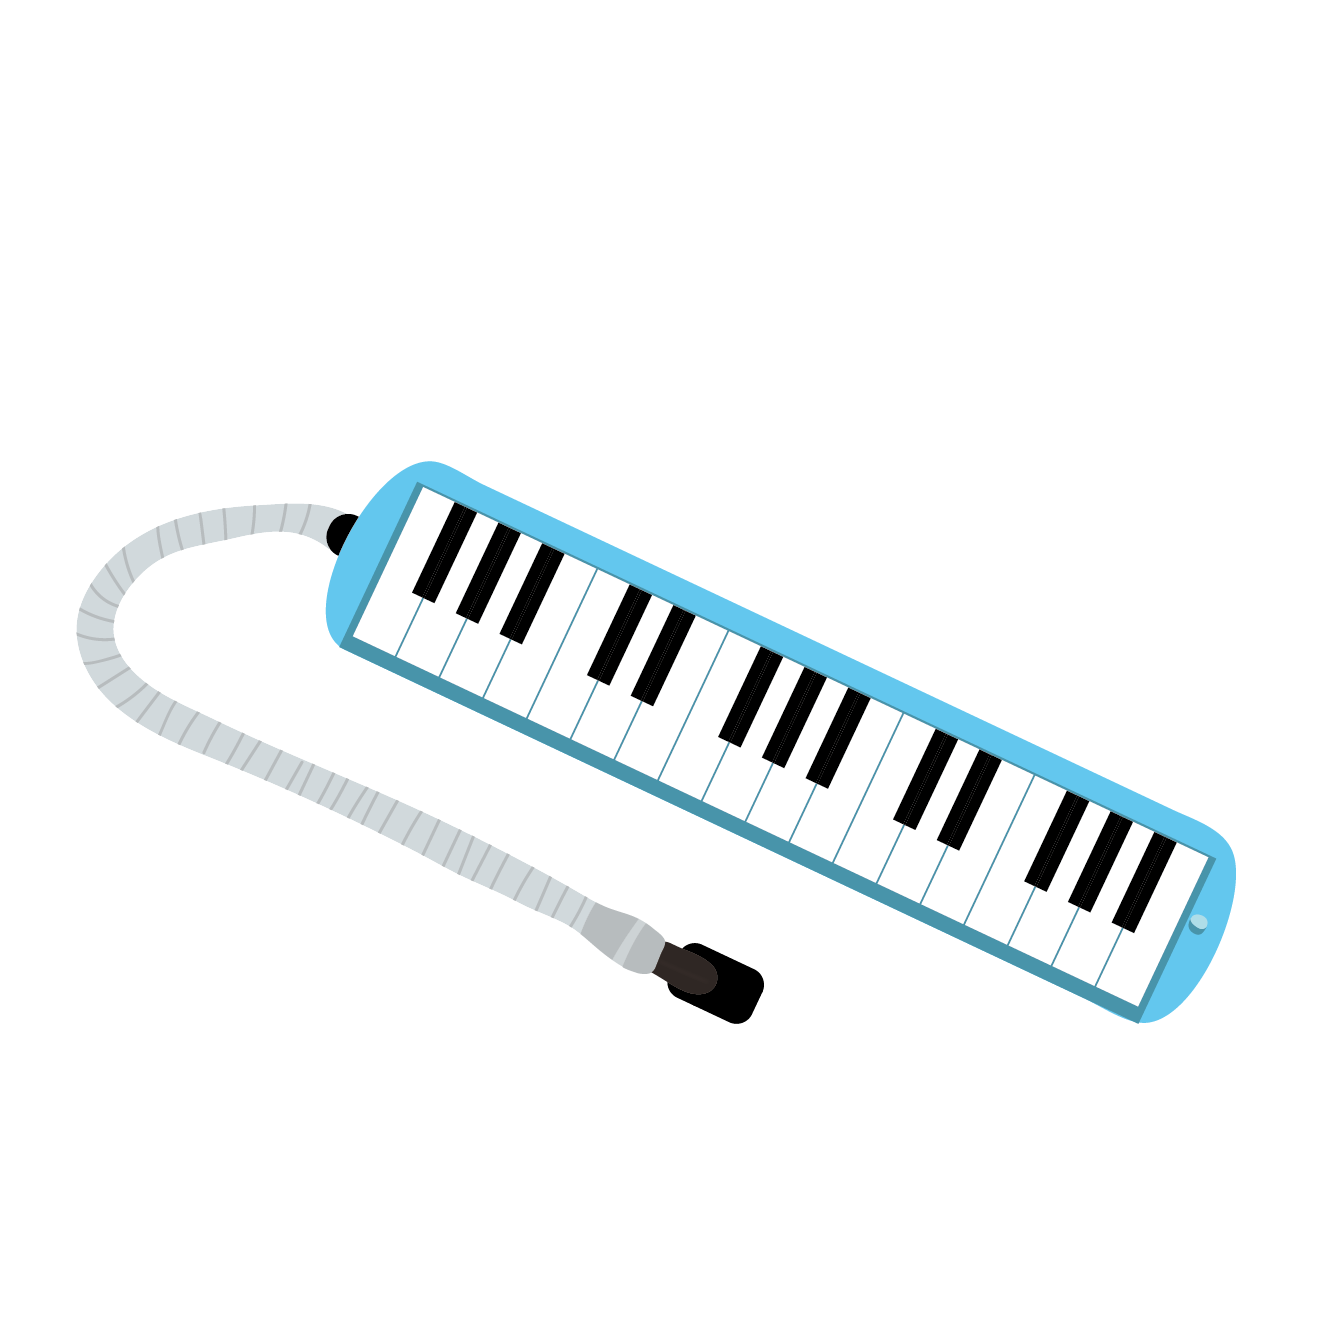 かわいい 鍵盤ハーモニカ ピアニカ 無料 イラスト 音楽教材 商用フリー 無料 のイラスト素材なら イラストマンション